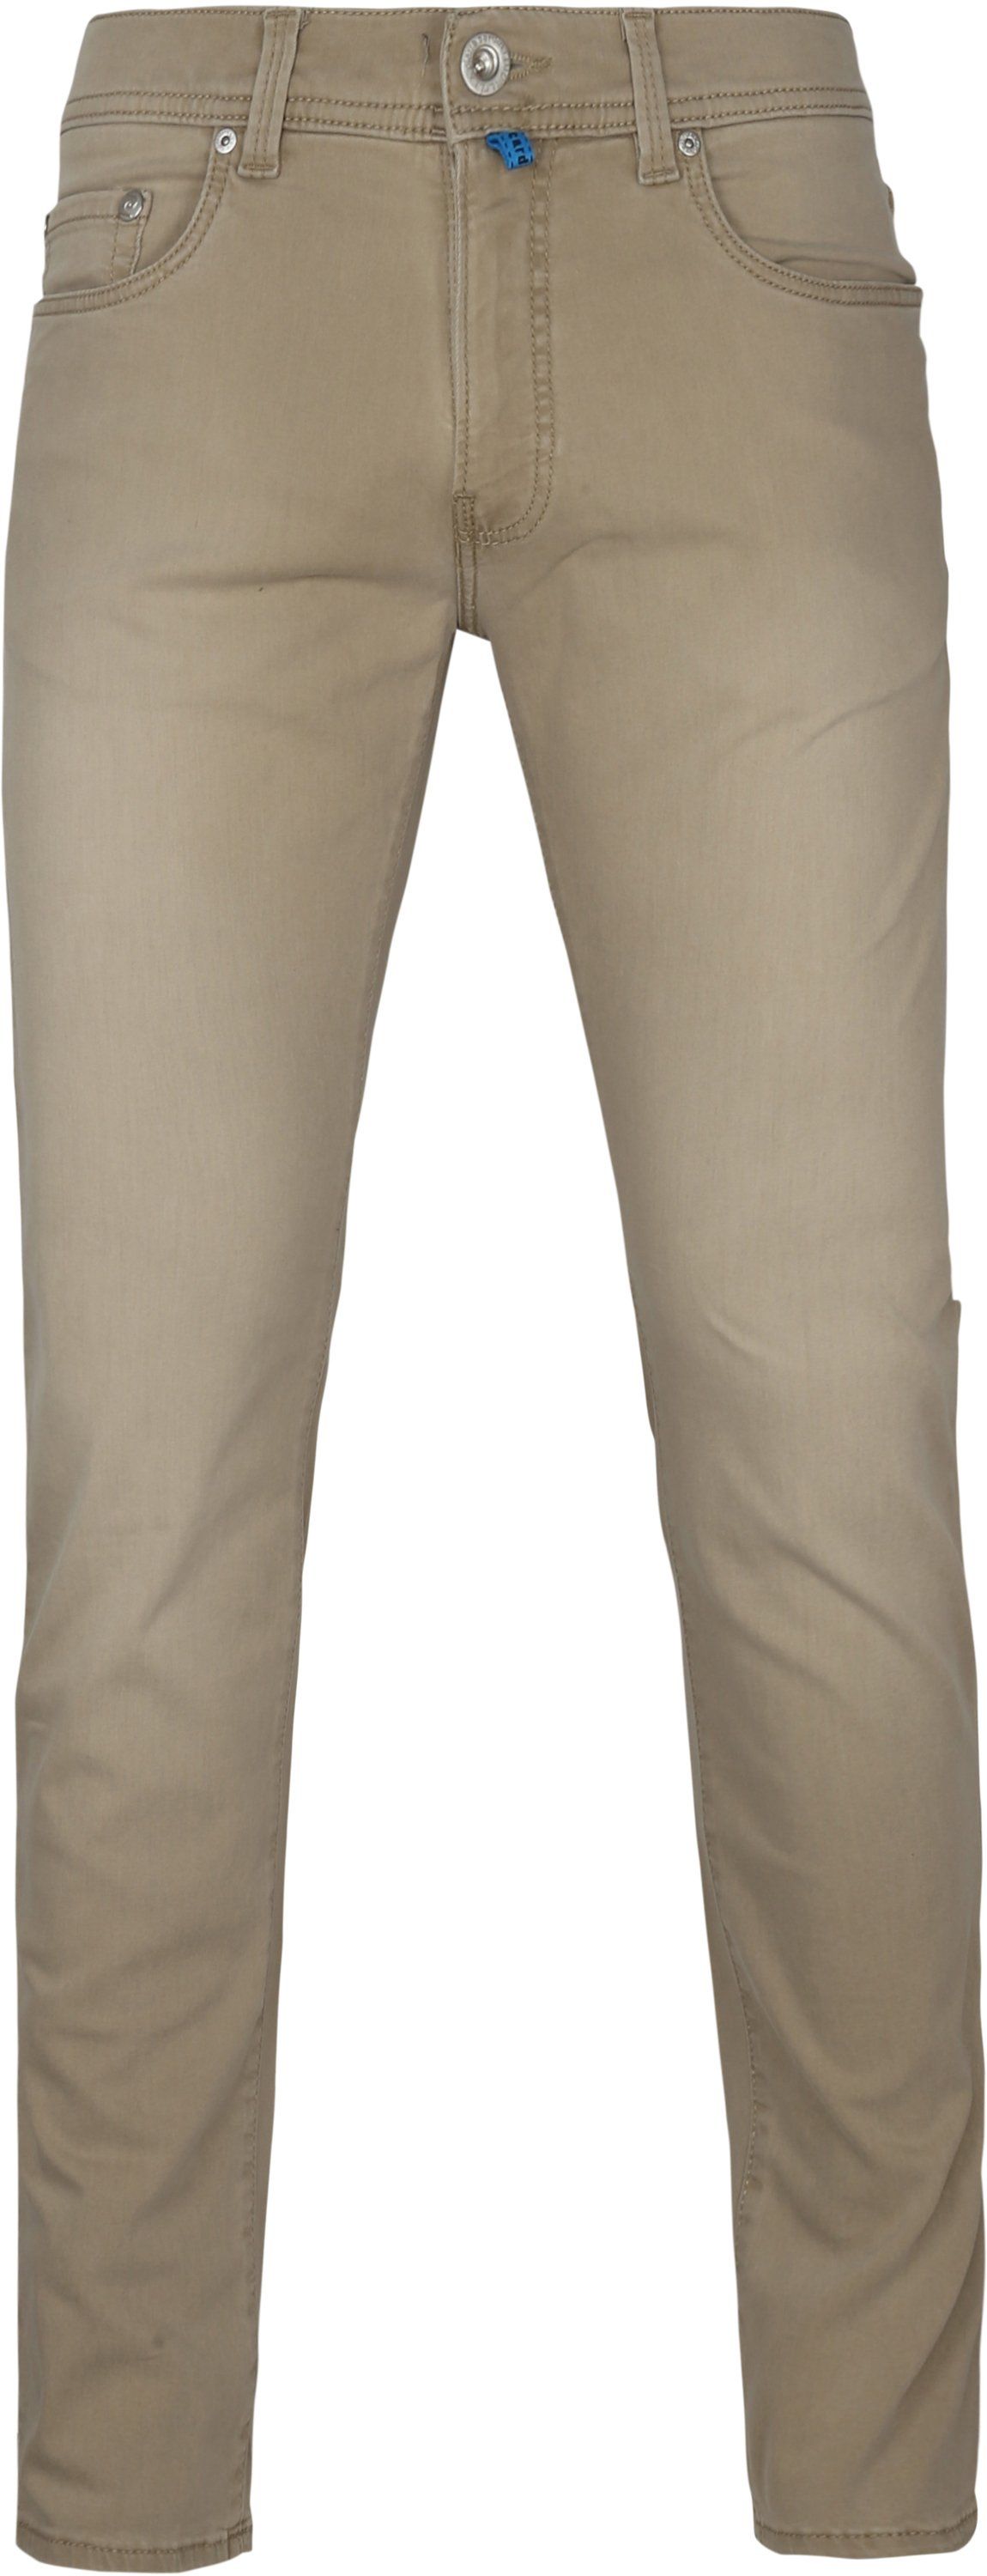 Pierre Cardin Jeans Lyon Tapered Future Flex Light Brown Beige size W 31